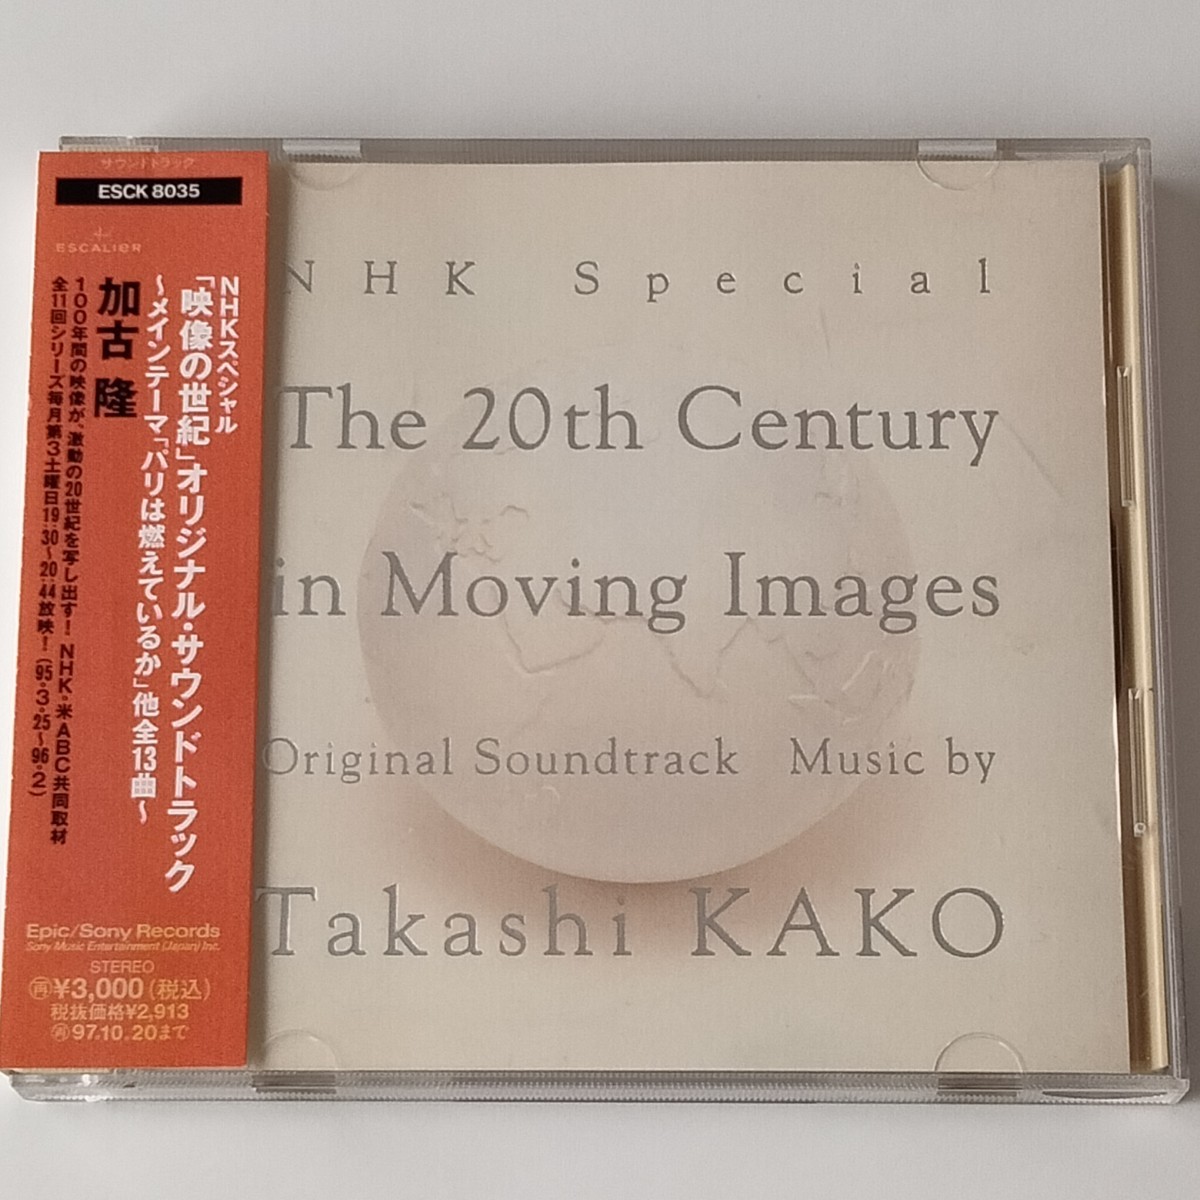 【帯付CD】加古隆/NHKスペシャル「映像の世紀」(ESCK-8035)オリジナル・サウンドトラック/パリは燃えているか 他全13曲/人気サントラ_画像1